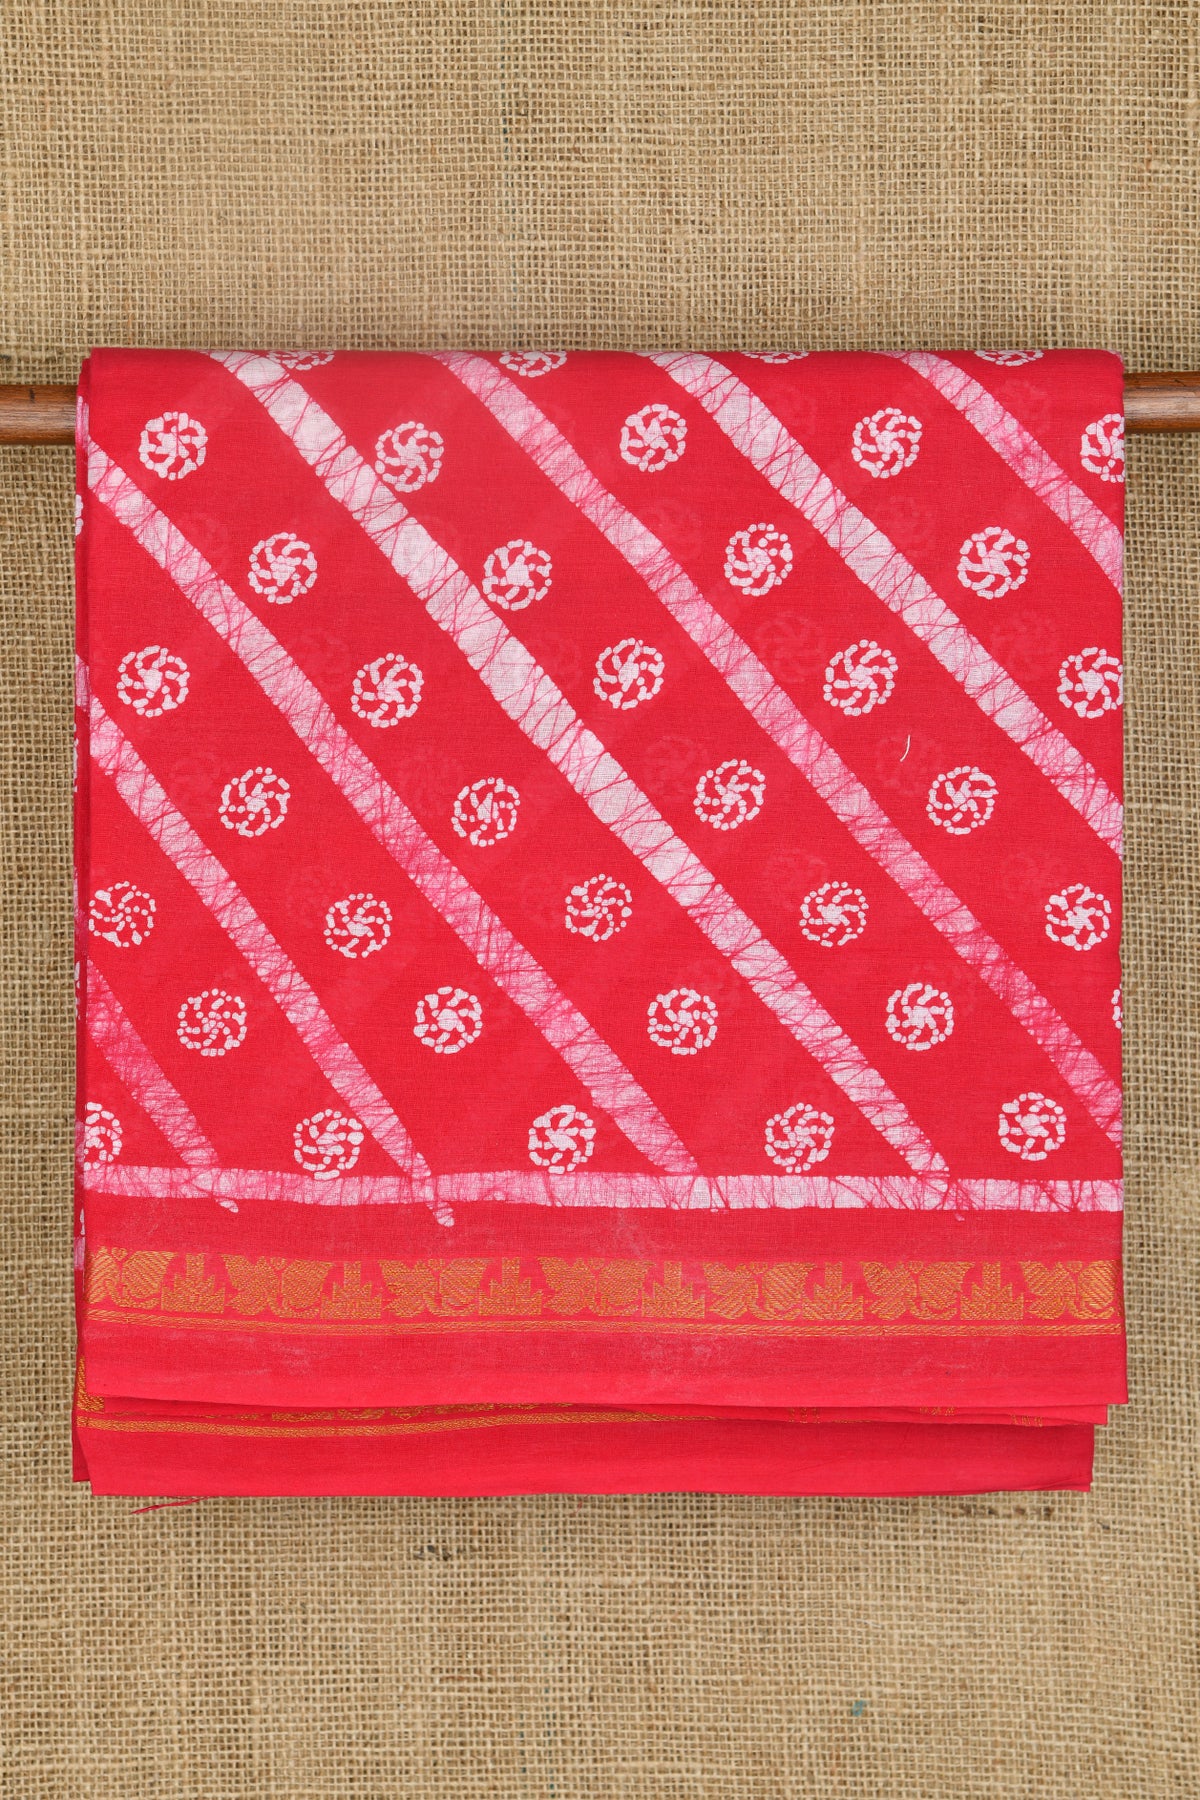 Diagonal Allover Zari Border Hot Pink Sungudi Cotton Saree